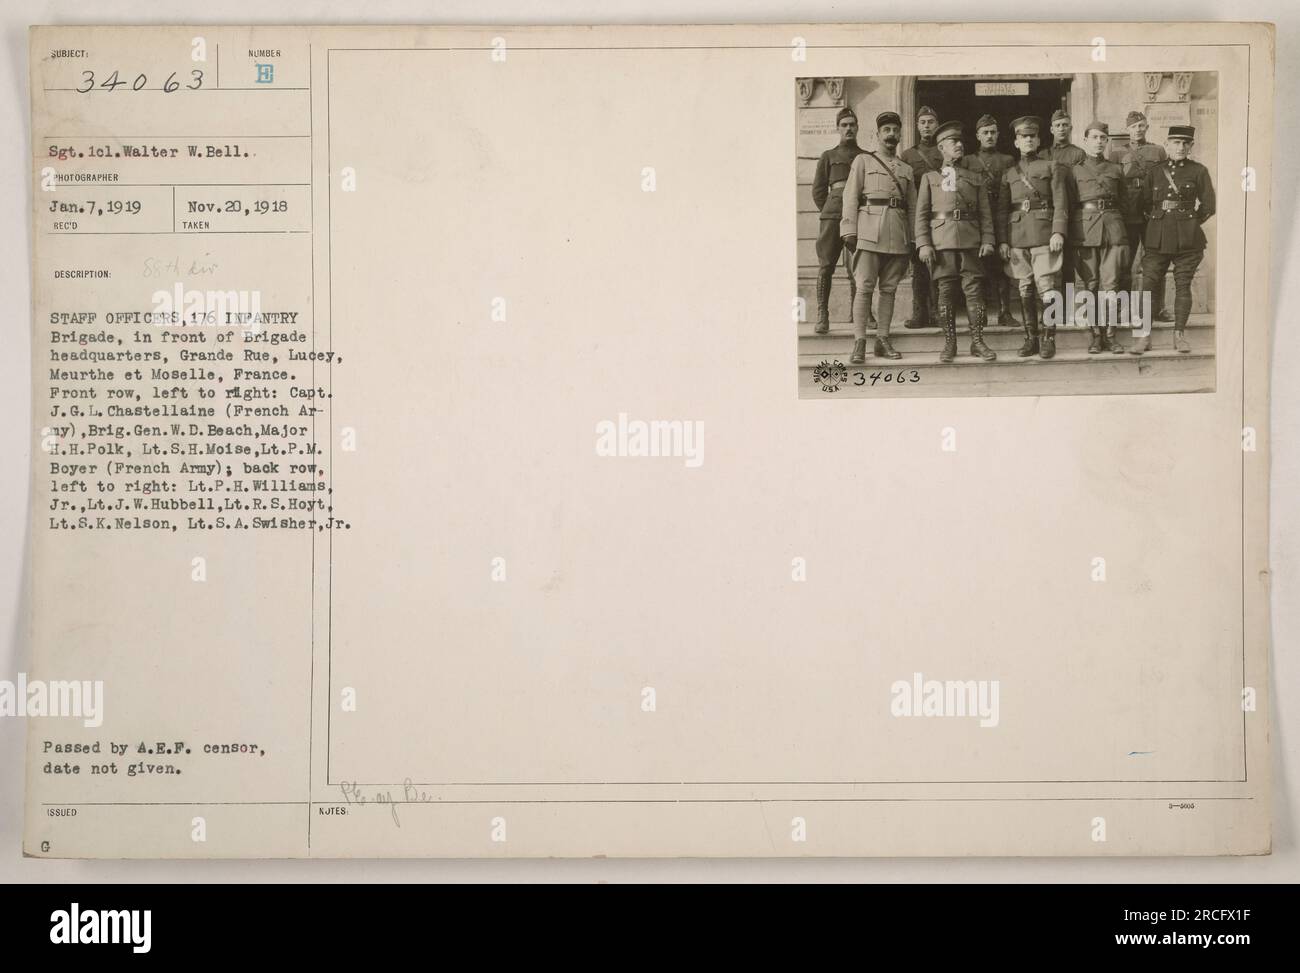 Didascalia: 'Ufficiali di stato maggiore della 176a Brigata di fanteria di fronte al quartier generale della Brigata a Lucey, Francia durante la prima guerra mondiale. Prima fila (da sinistra a destra): Capitano J.G. L. Chastellaine (esercito francese), Brig. Gen. W. D. Beach, maggiore H.H. Polk, tenente S.H. Moise, tenente P.M. Boyer (esercito francese); fila posteriore (da sinistra a destra): Tenente P.H. Williams Jr., tenente J.W. Hubbell, tenente R.S. Hoyt, tenente S.K. Nelson, tenente SA Swisher Jr. Fotografia scattata il 7 gennaio 1919 e passata da A.E.F. censor." Foto Stock